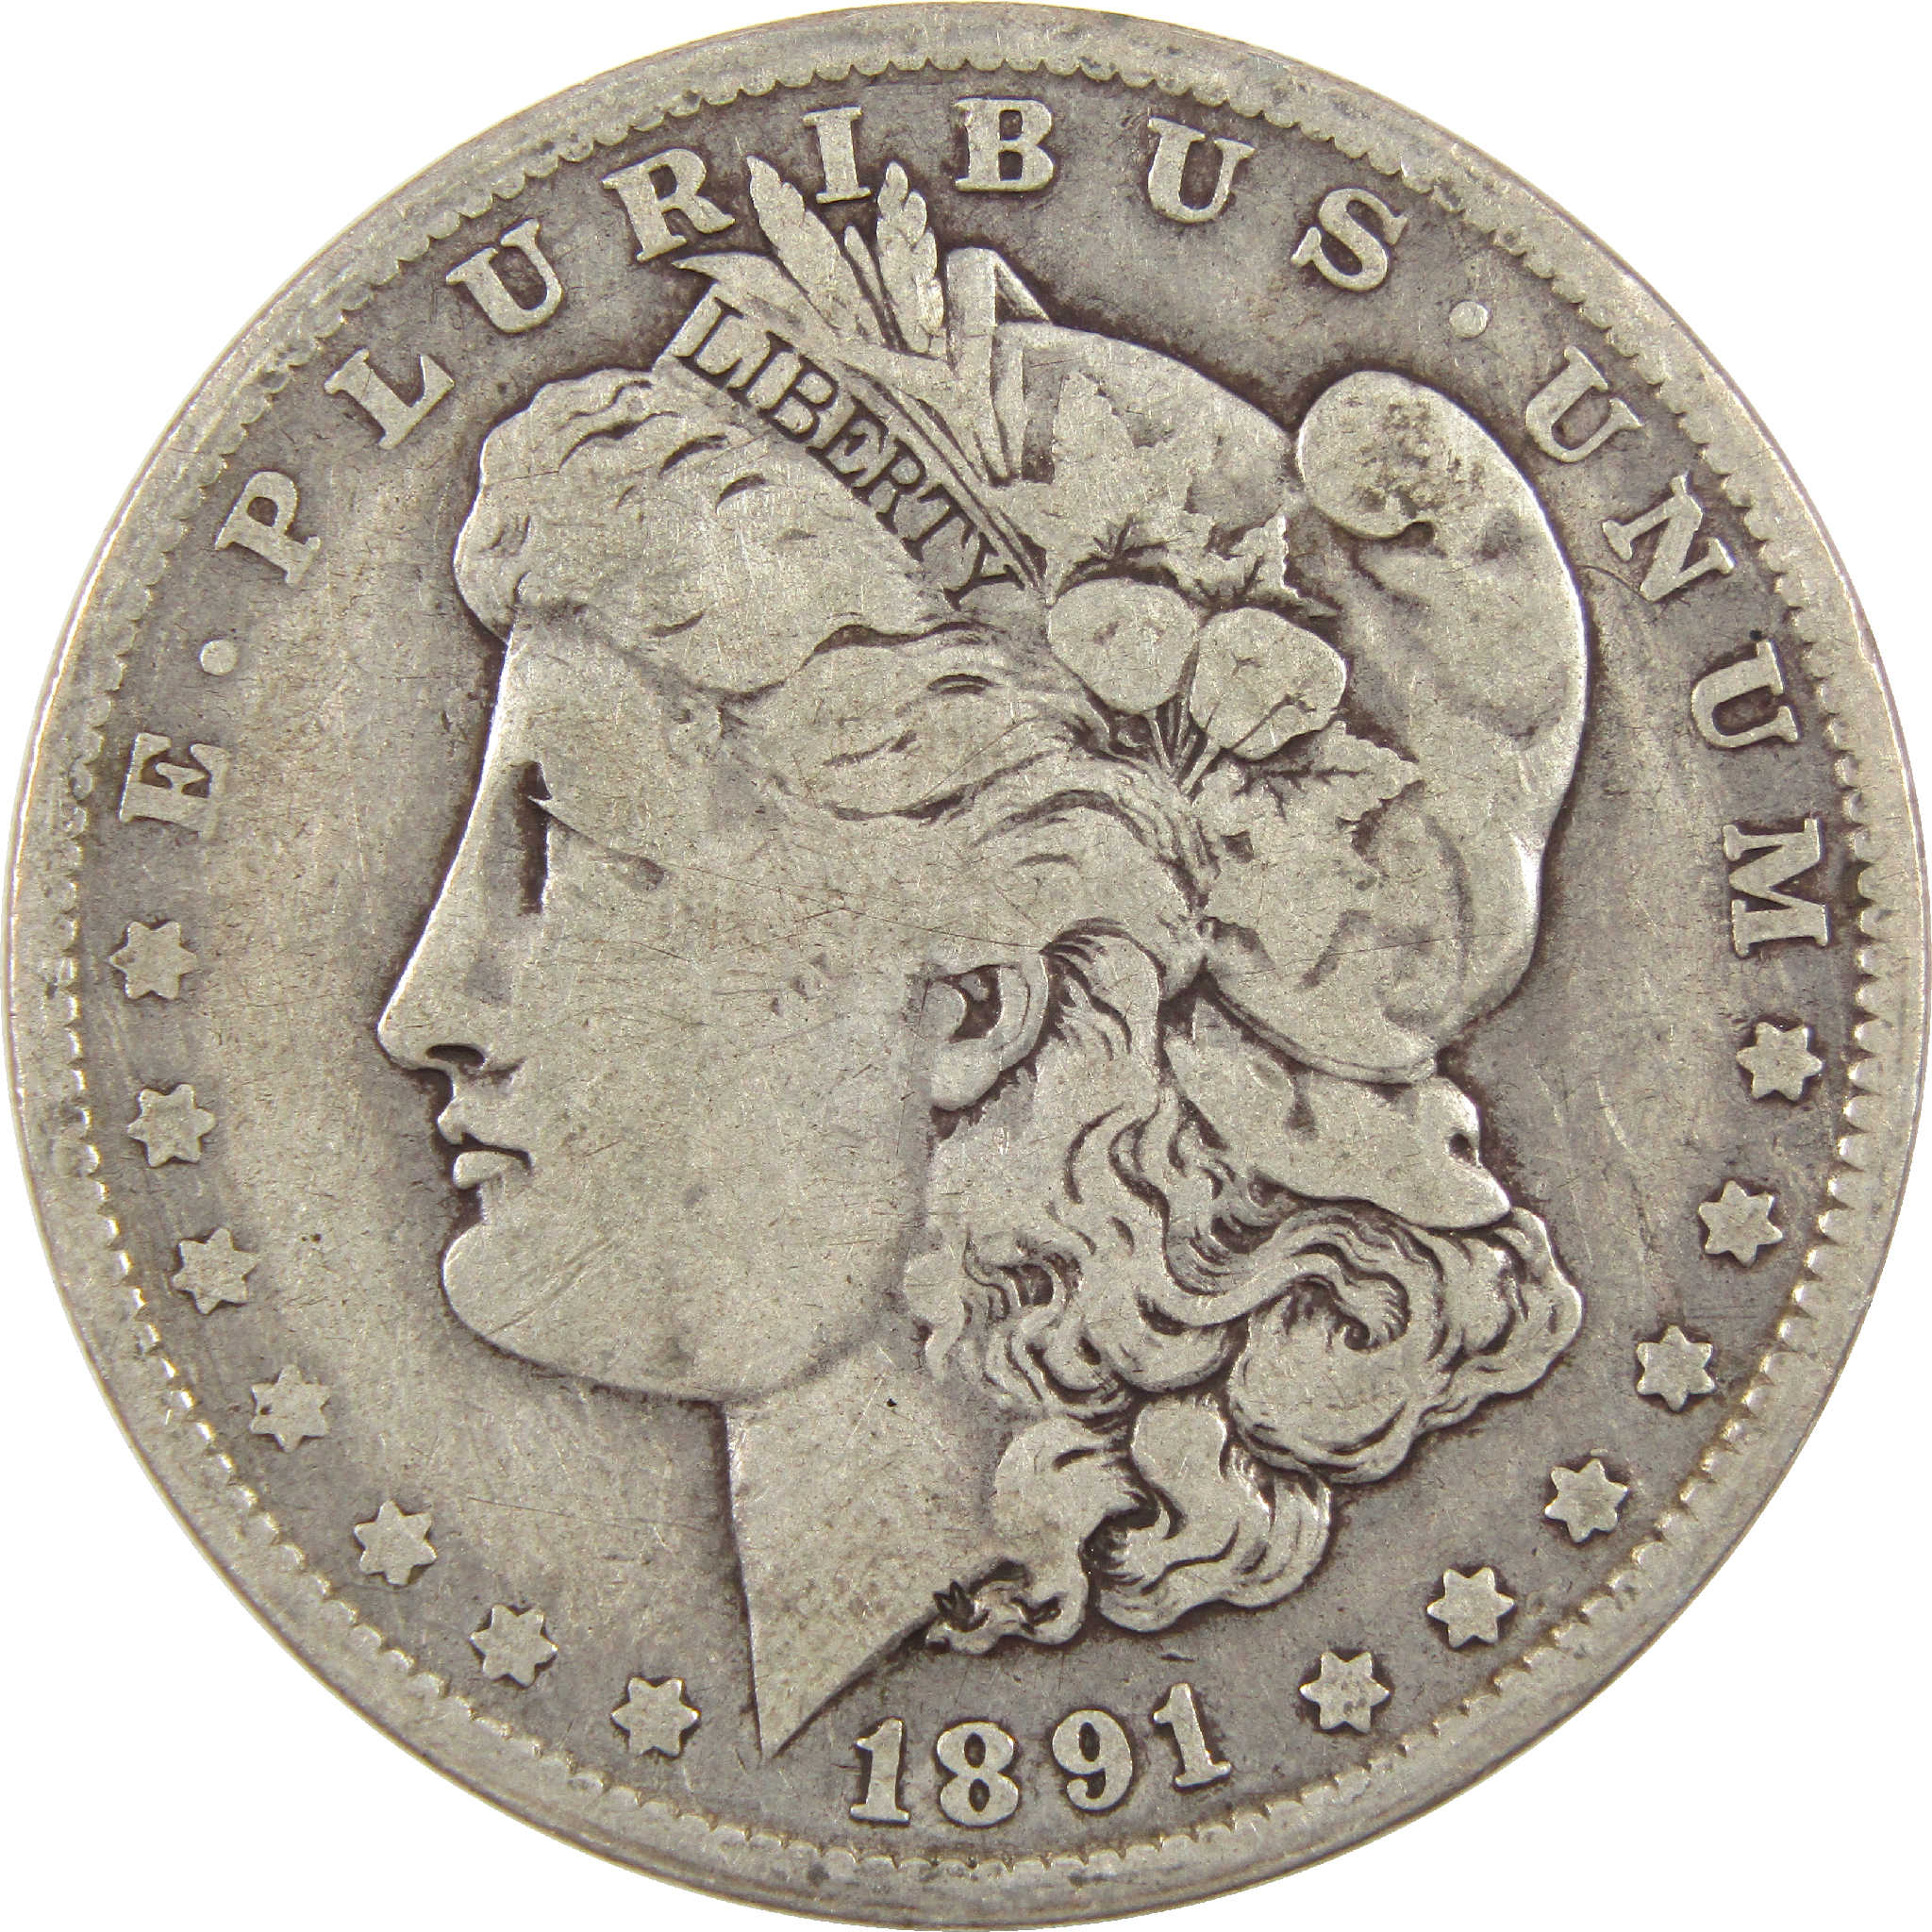 1891 O Morgan Dollar F Fine Silver $1 Coin SKU:I11409 - Morgan coin - Morgan silver dollar - Morgan silver dollar for sale - Profile Coins &amp; Collectibles